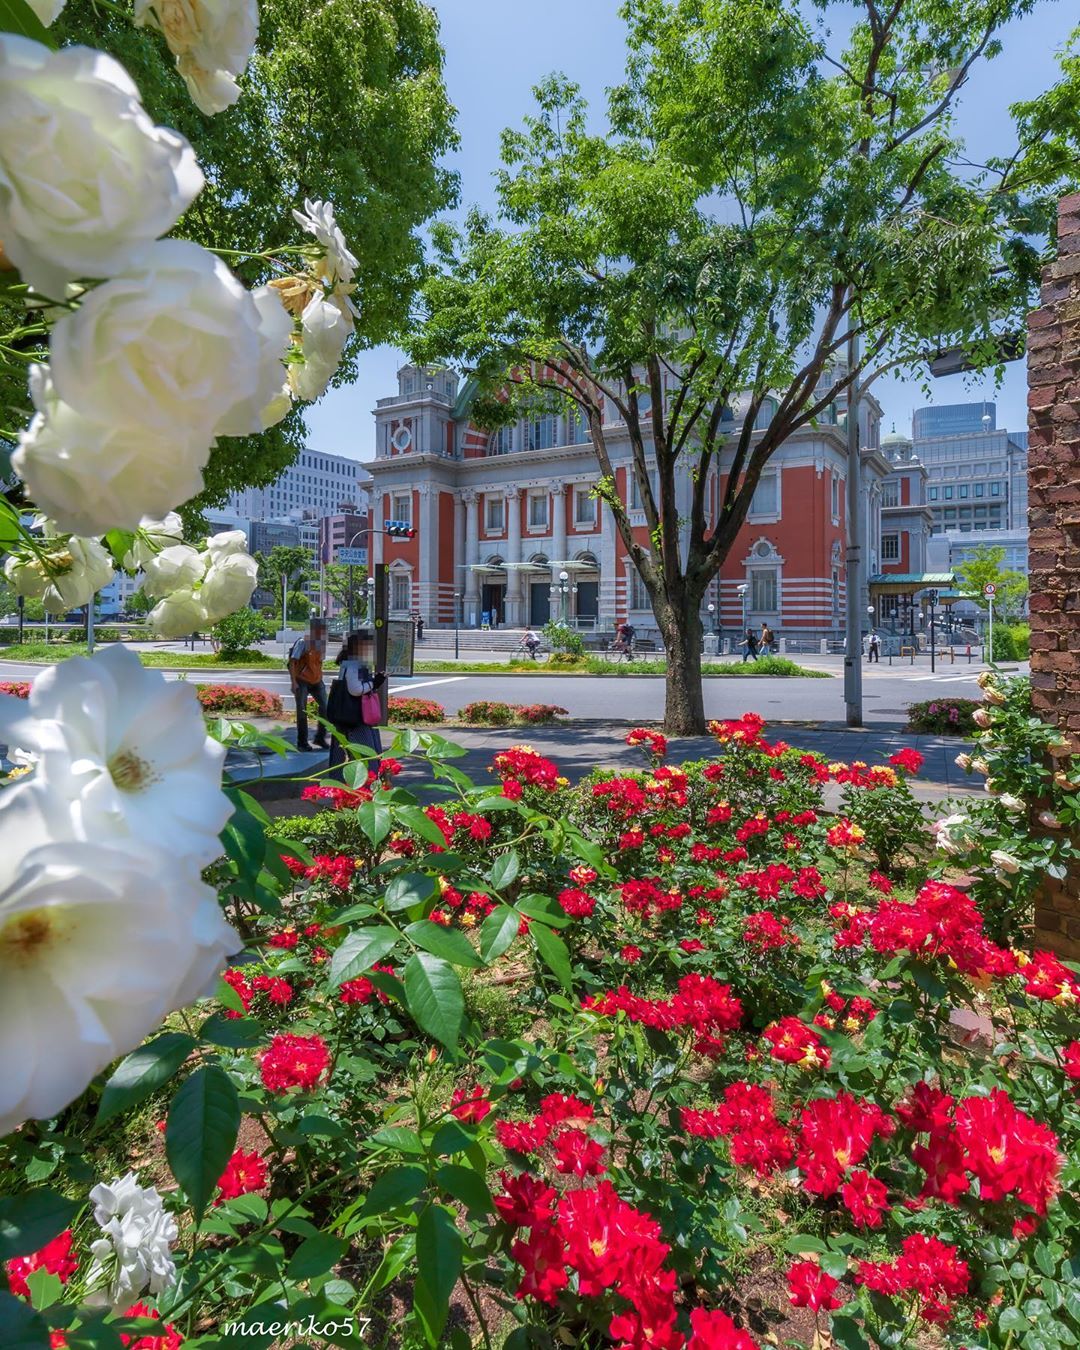 中之島公園のバラ園は3,700株ものバラが咲き誇る密かな観光スポット